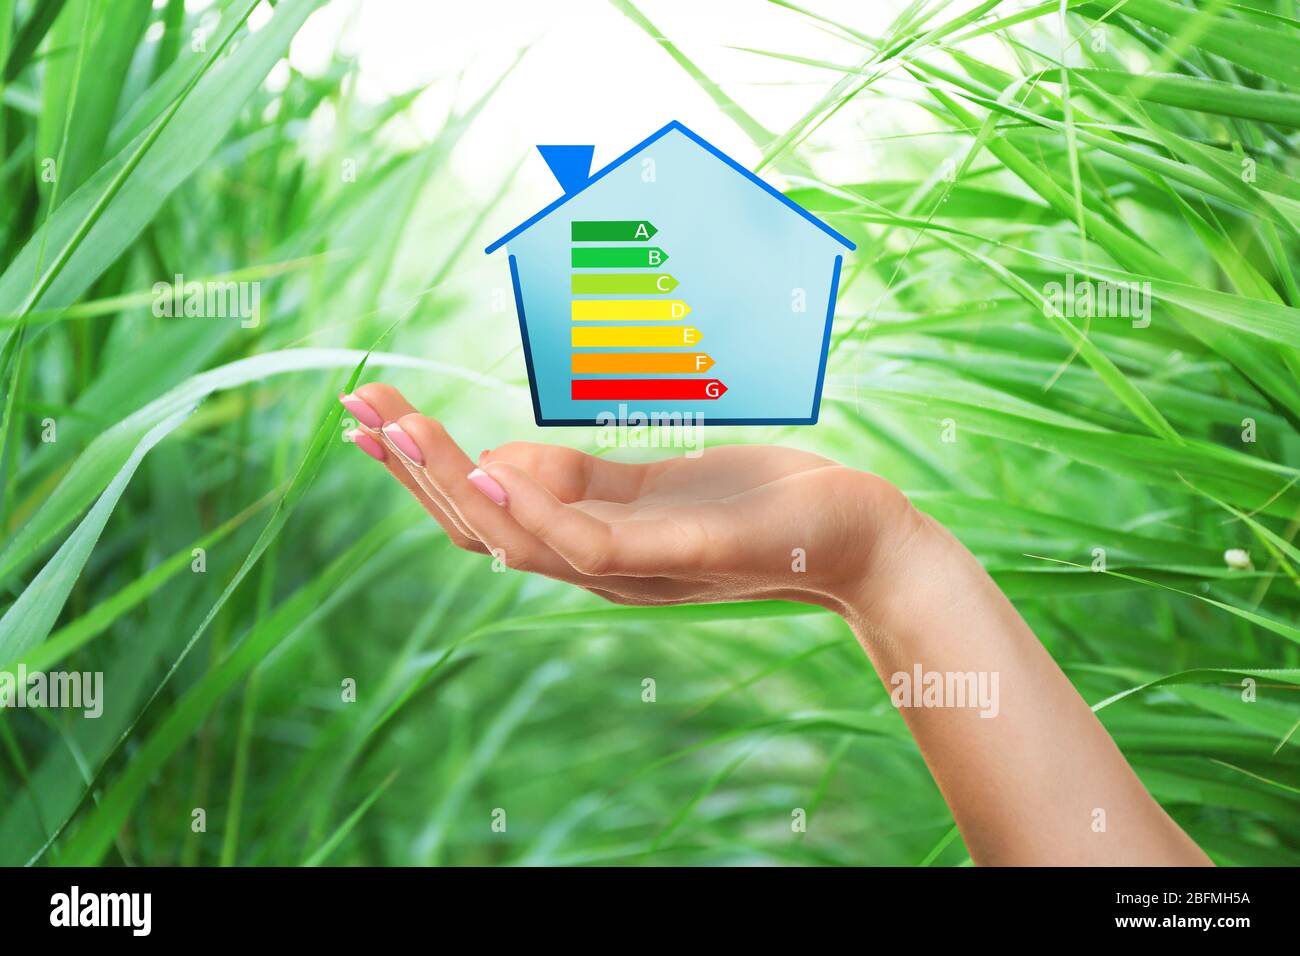 Main et maison de femme avec l'échelle d'efficacité énergétique sur fond naturel Banque D'Images